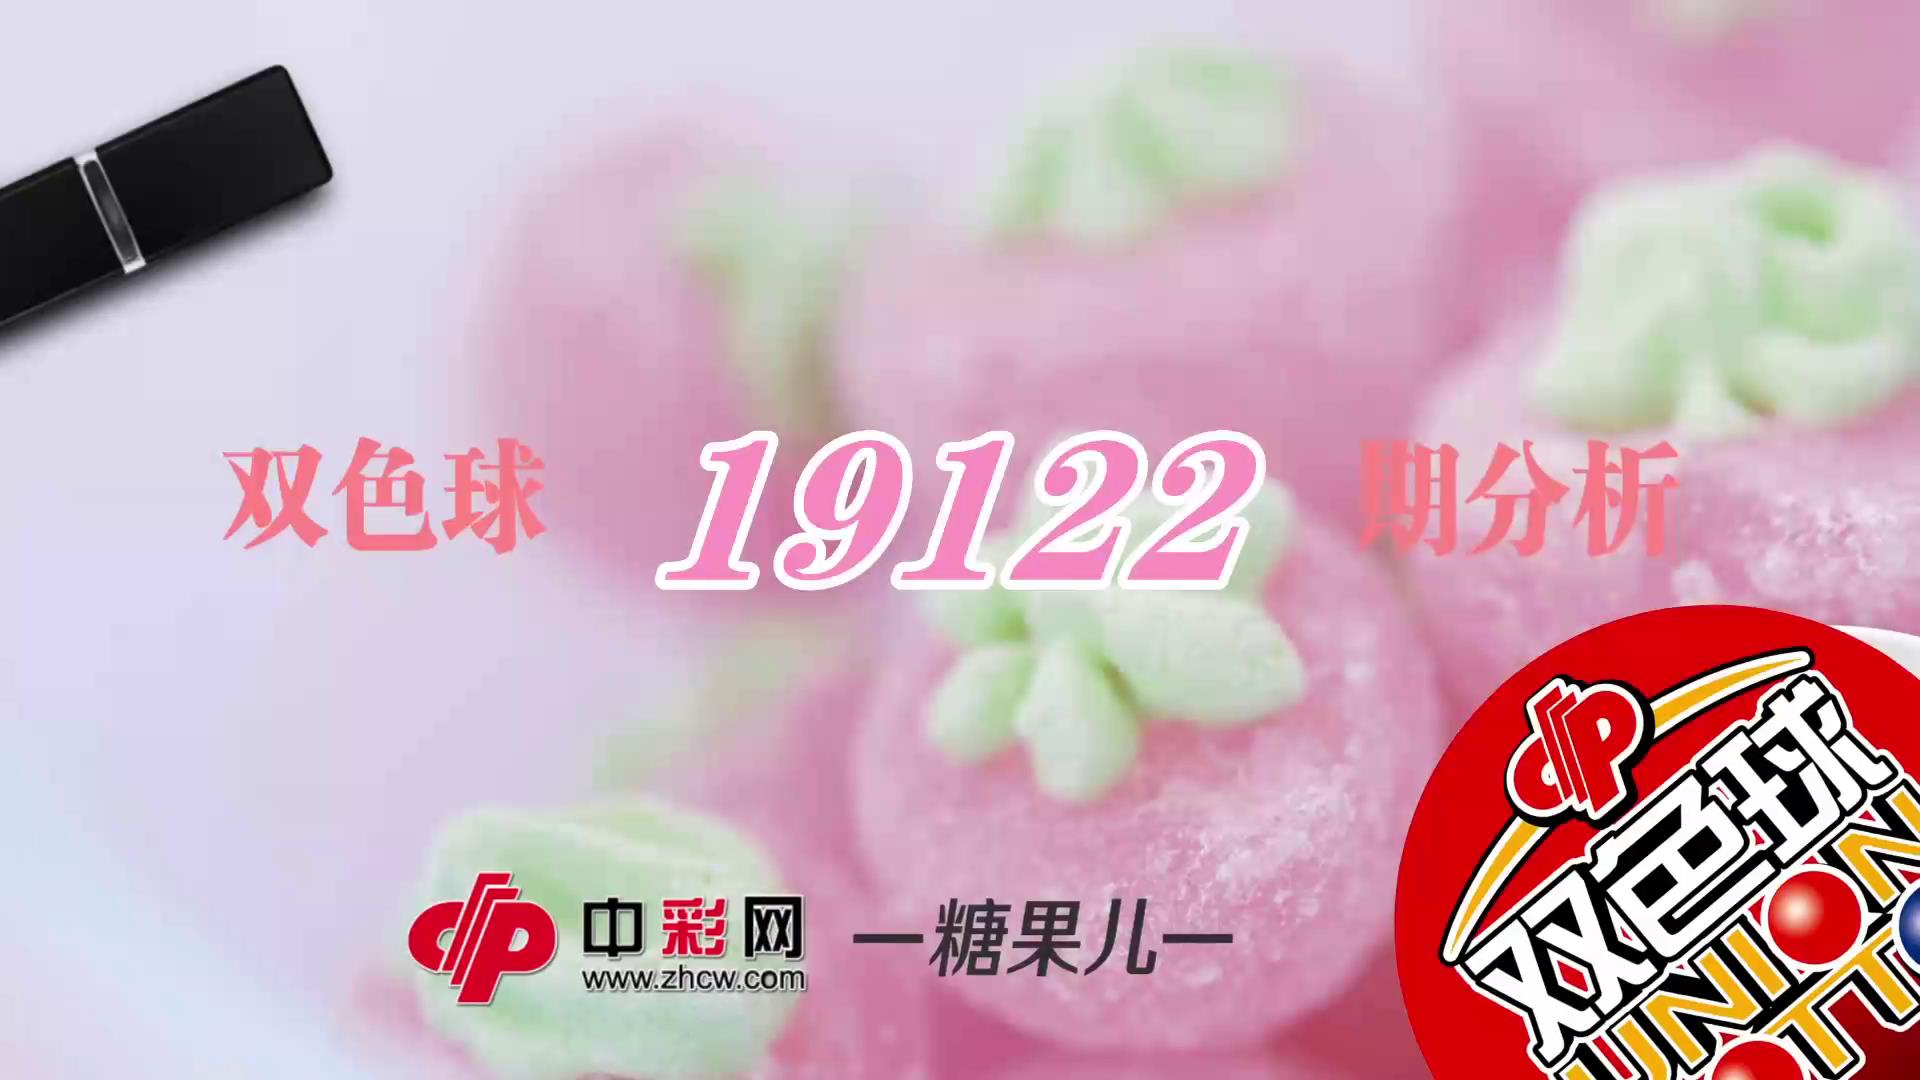 【中彩视频】糖果儿双色球第19122期